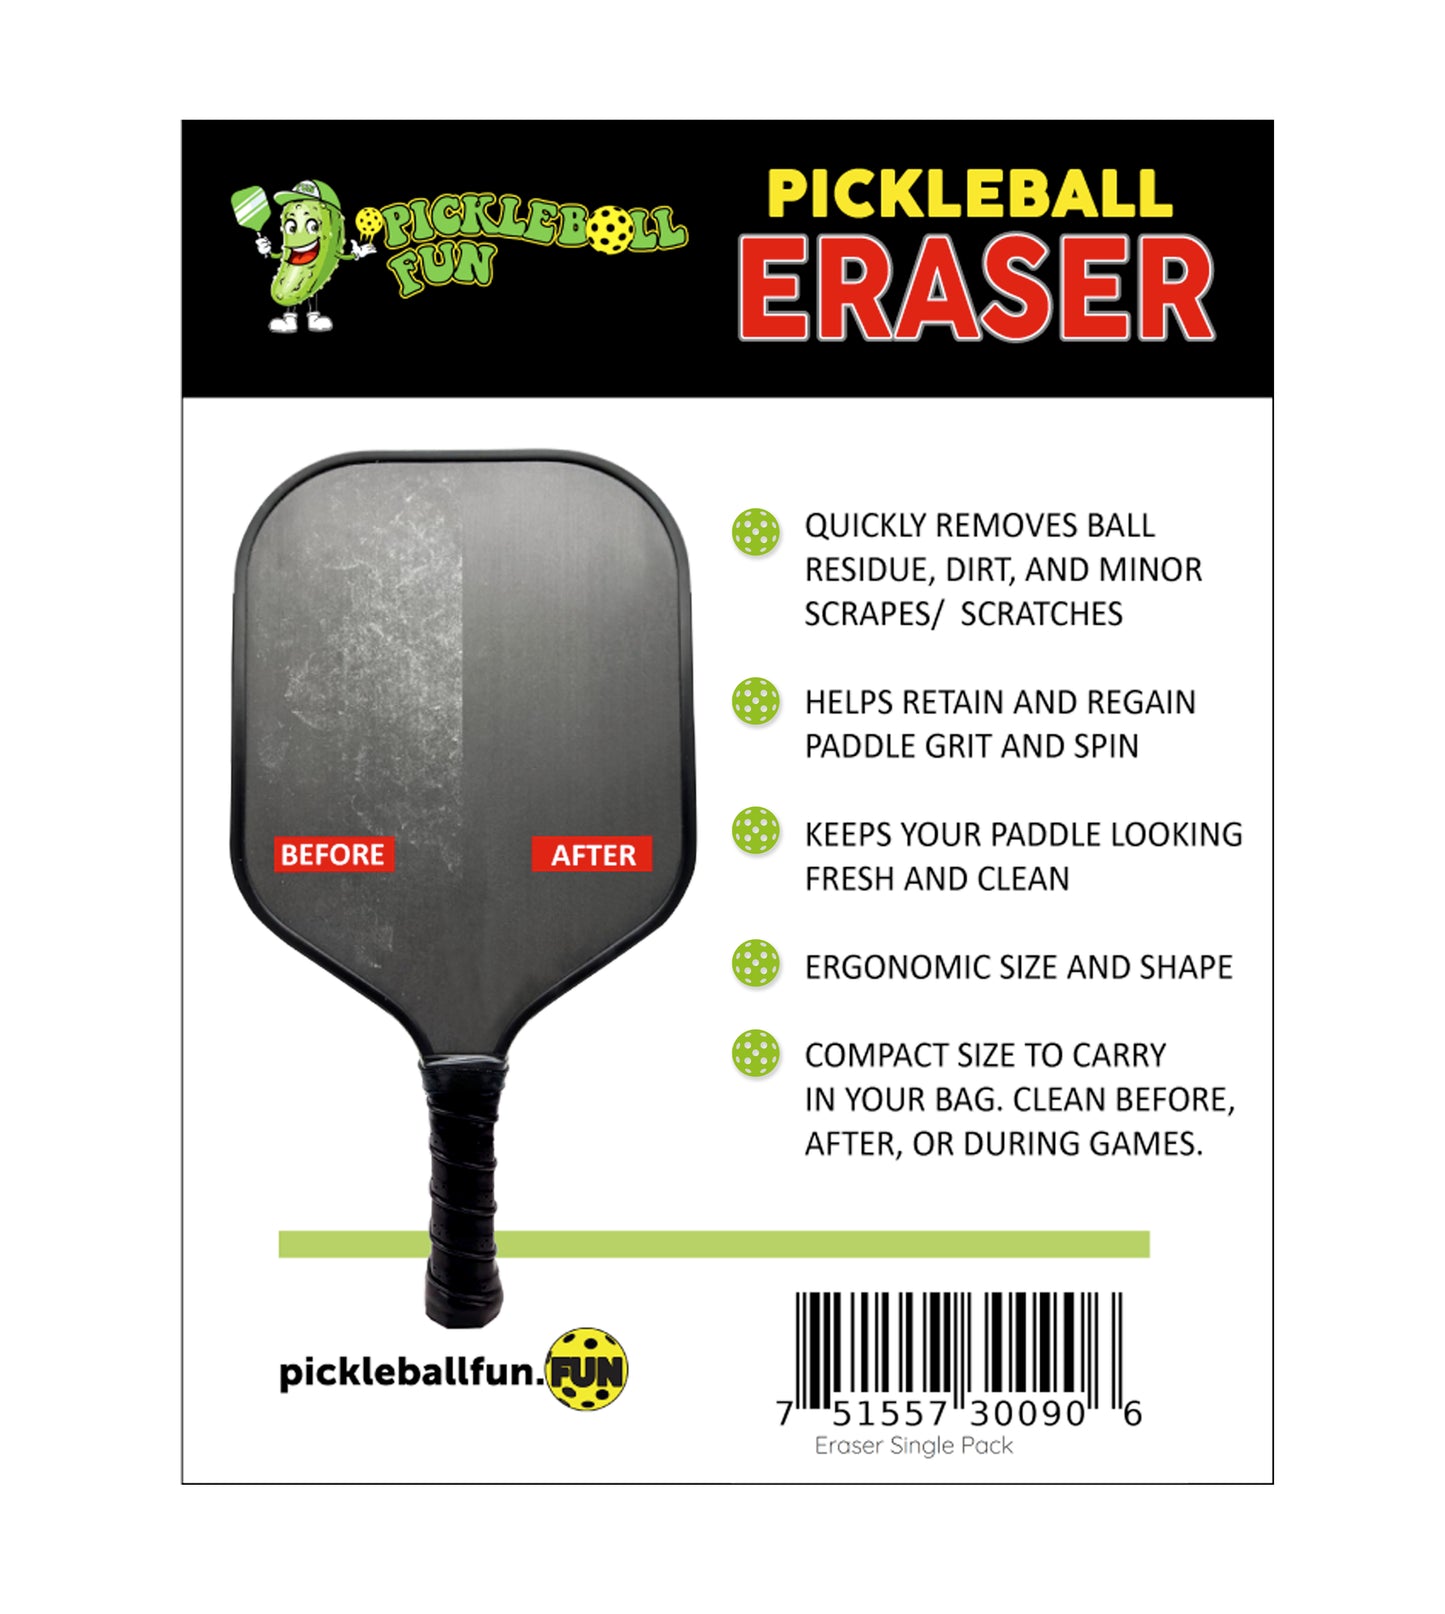 Pickleball Paddle Eraser 2-Pack Bonus Buy!